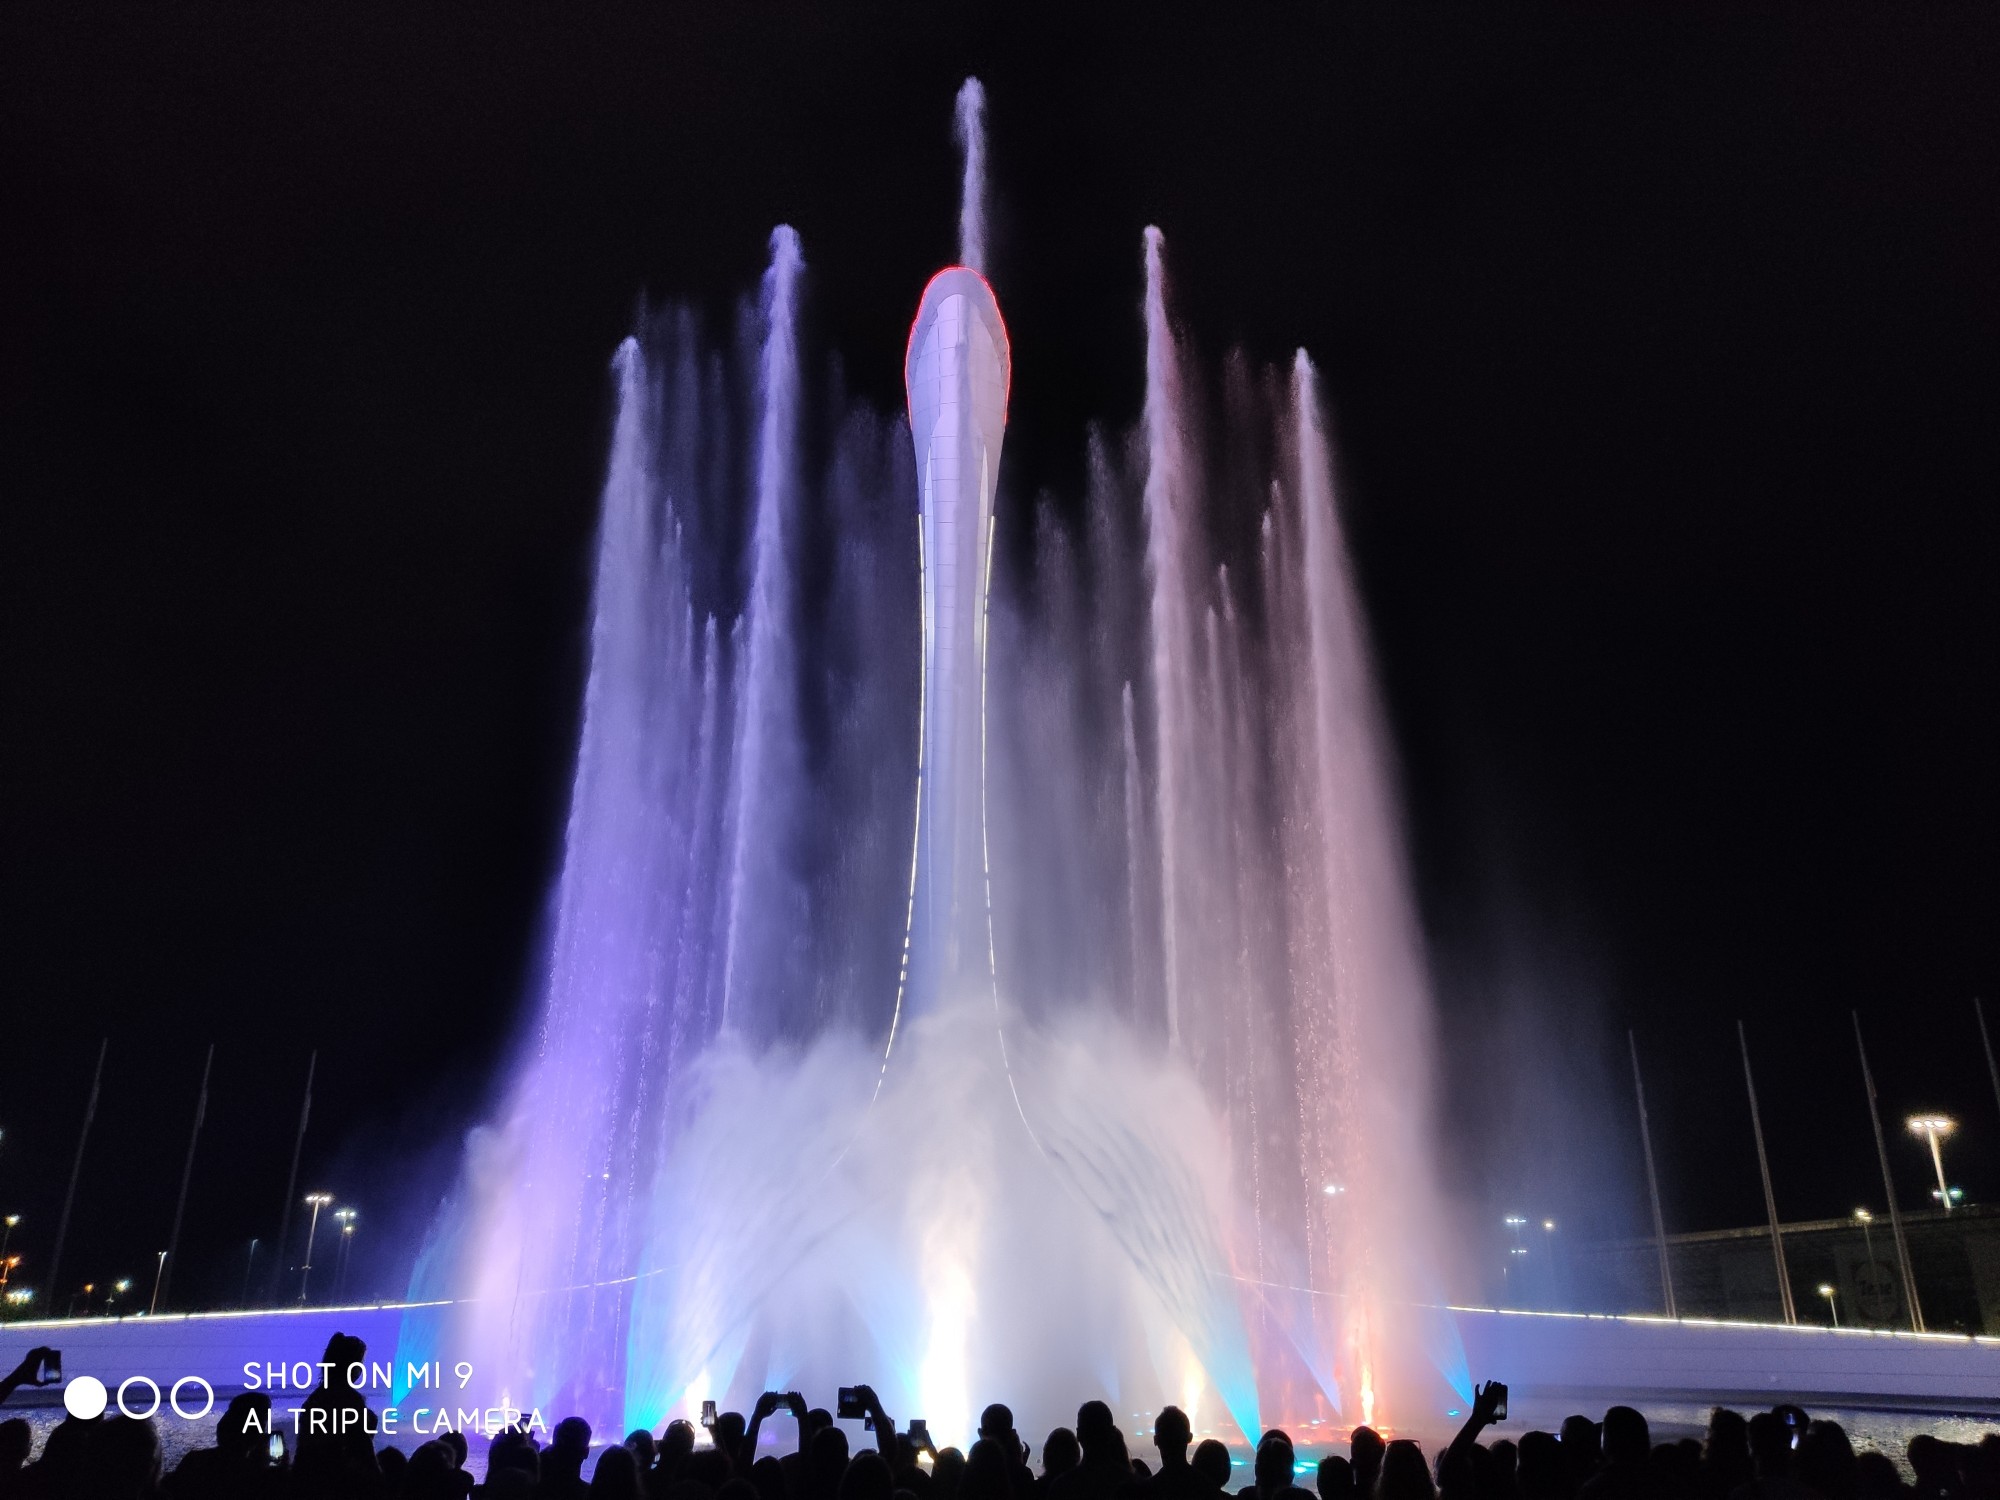 Олимпийский парк сегодня поющие фонтаны. Сочи парк фонтан. Олимпийский парк шоу фонтанов. Поющие фонтаны Сочи Олимпийский парк. Поющий фонтан в Сочи в Олимпийском парке.